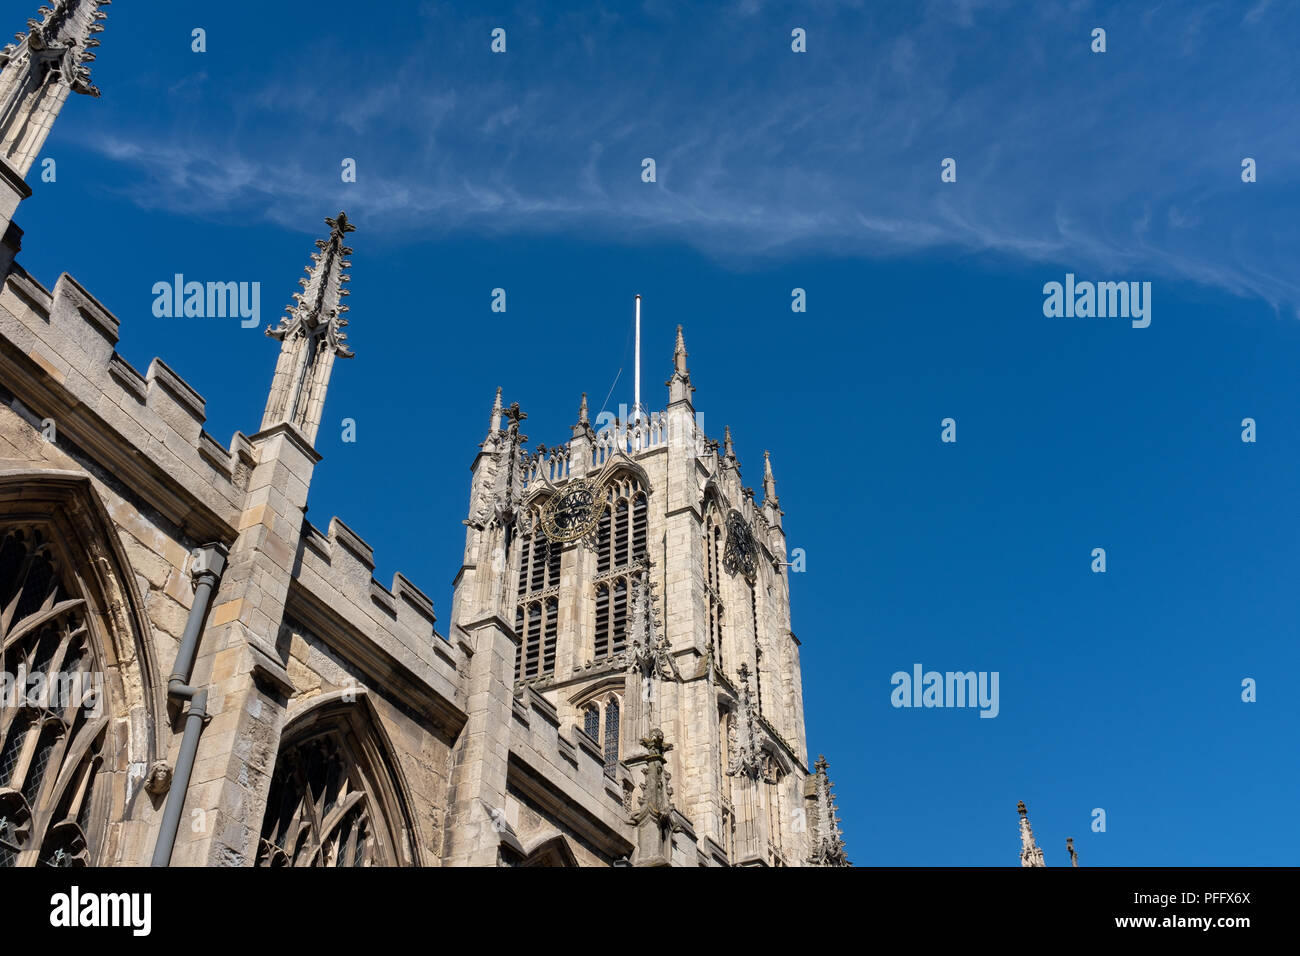 Image de Kingston Upon Hull UK City of Culture 2017. Montré est l'ancienne église Holy Trinity maintenant appelé Hull Minster prises contre un ciel bleu. Banque D'Images